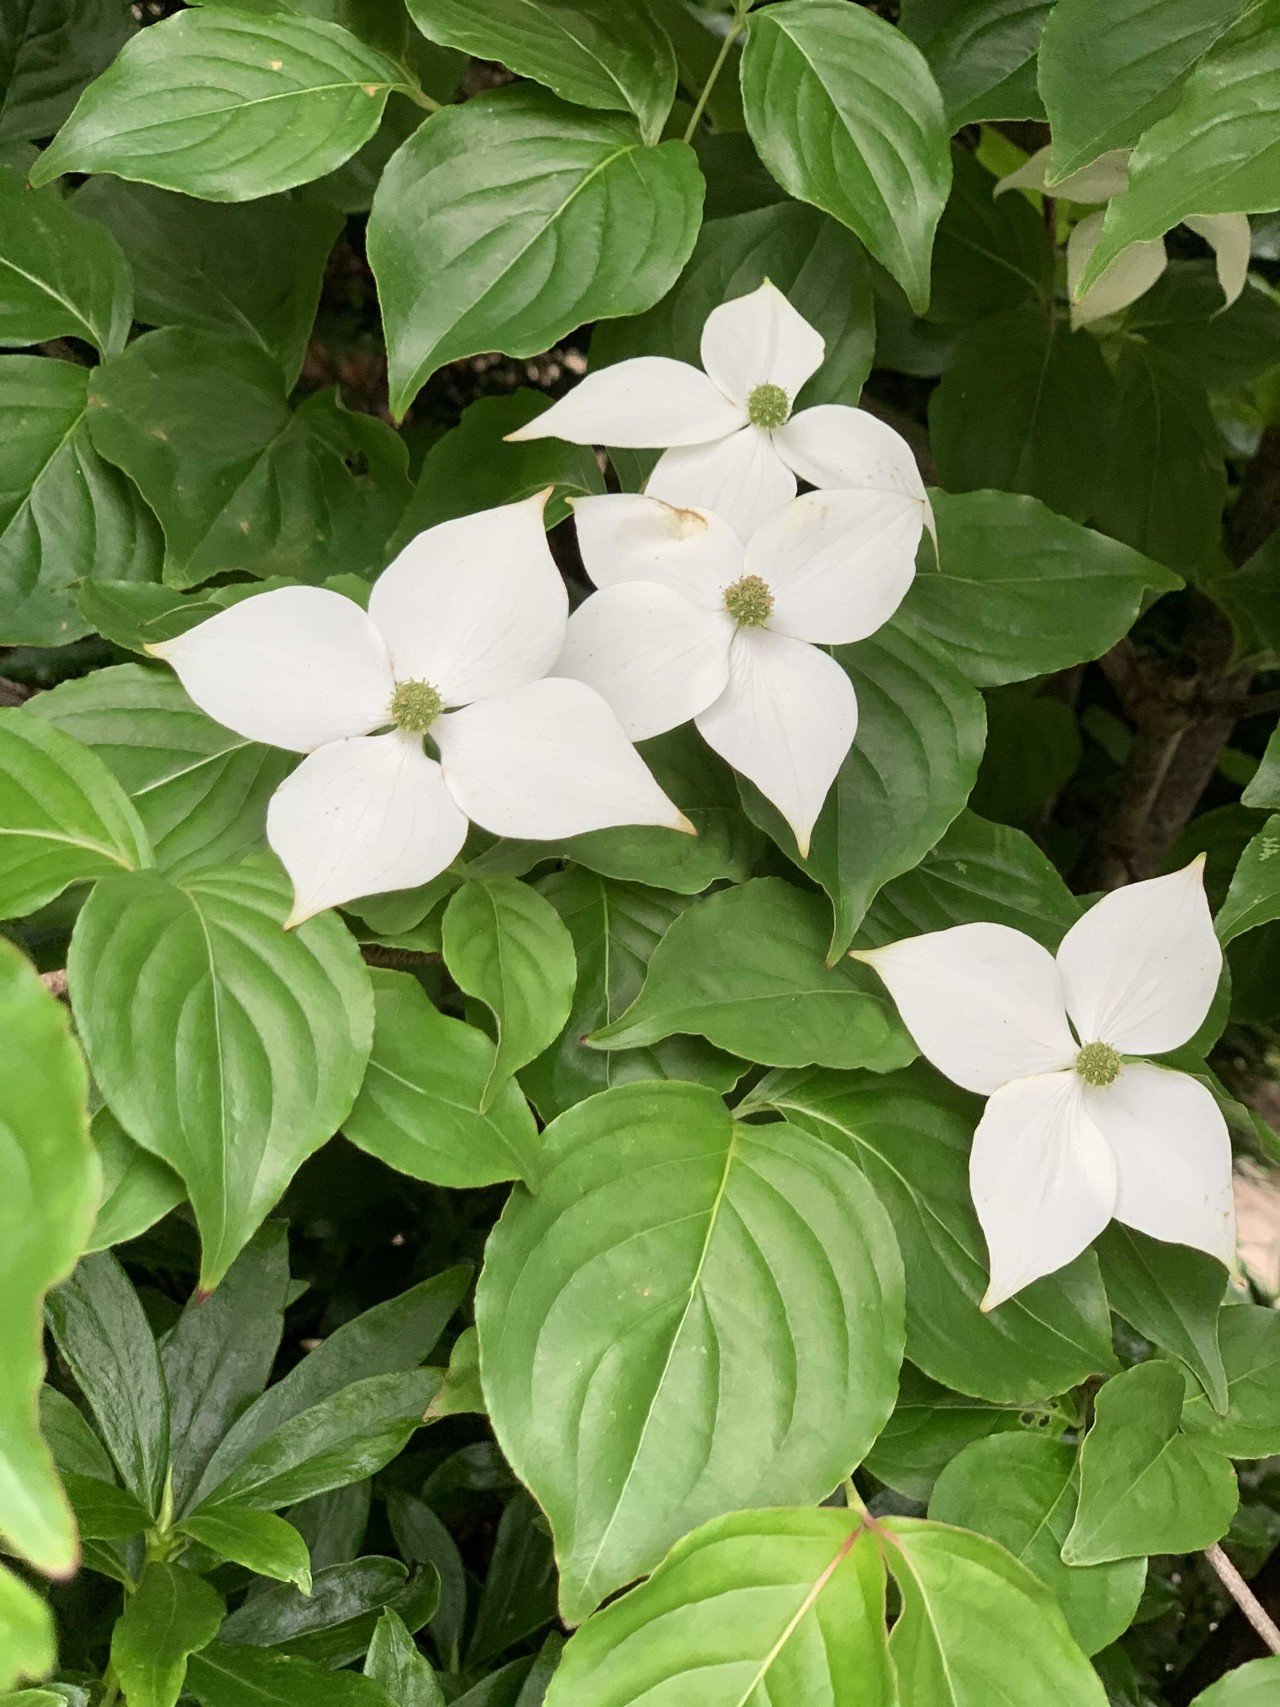 ハナミズキと似たこの花は ヤマボウシ ヤマボウシは日本が原産なのに対して ハナミズキはアメリカからの外来種 花言葉は 友情 わが家のシンボルツリーのように 部屋の前で咲いています Ruze Note